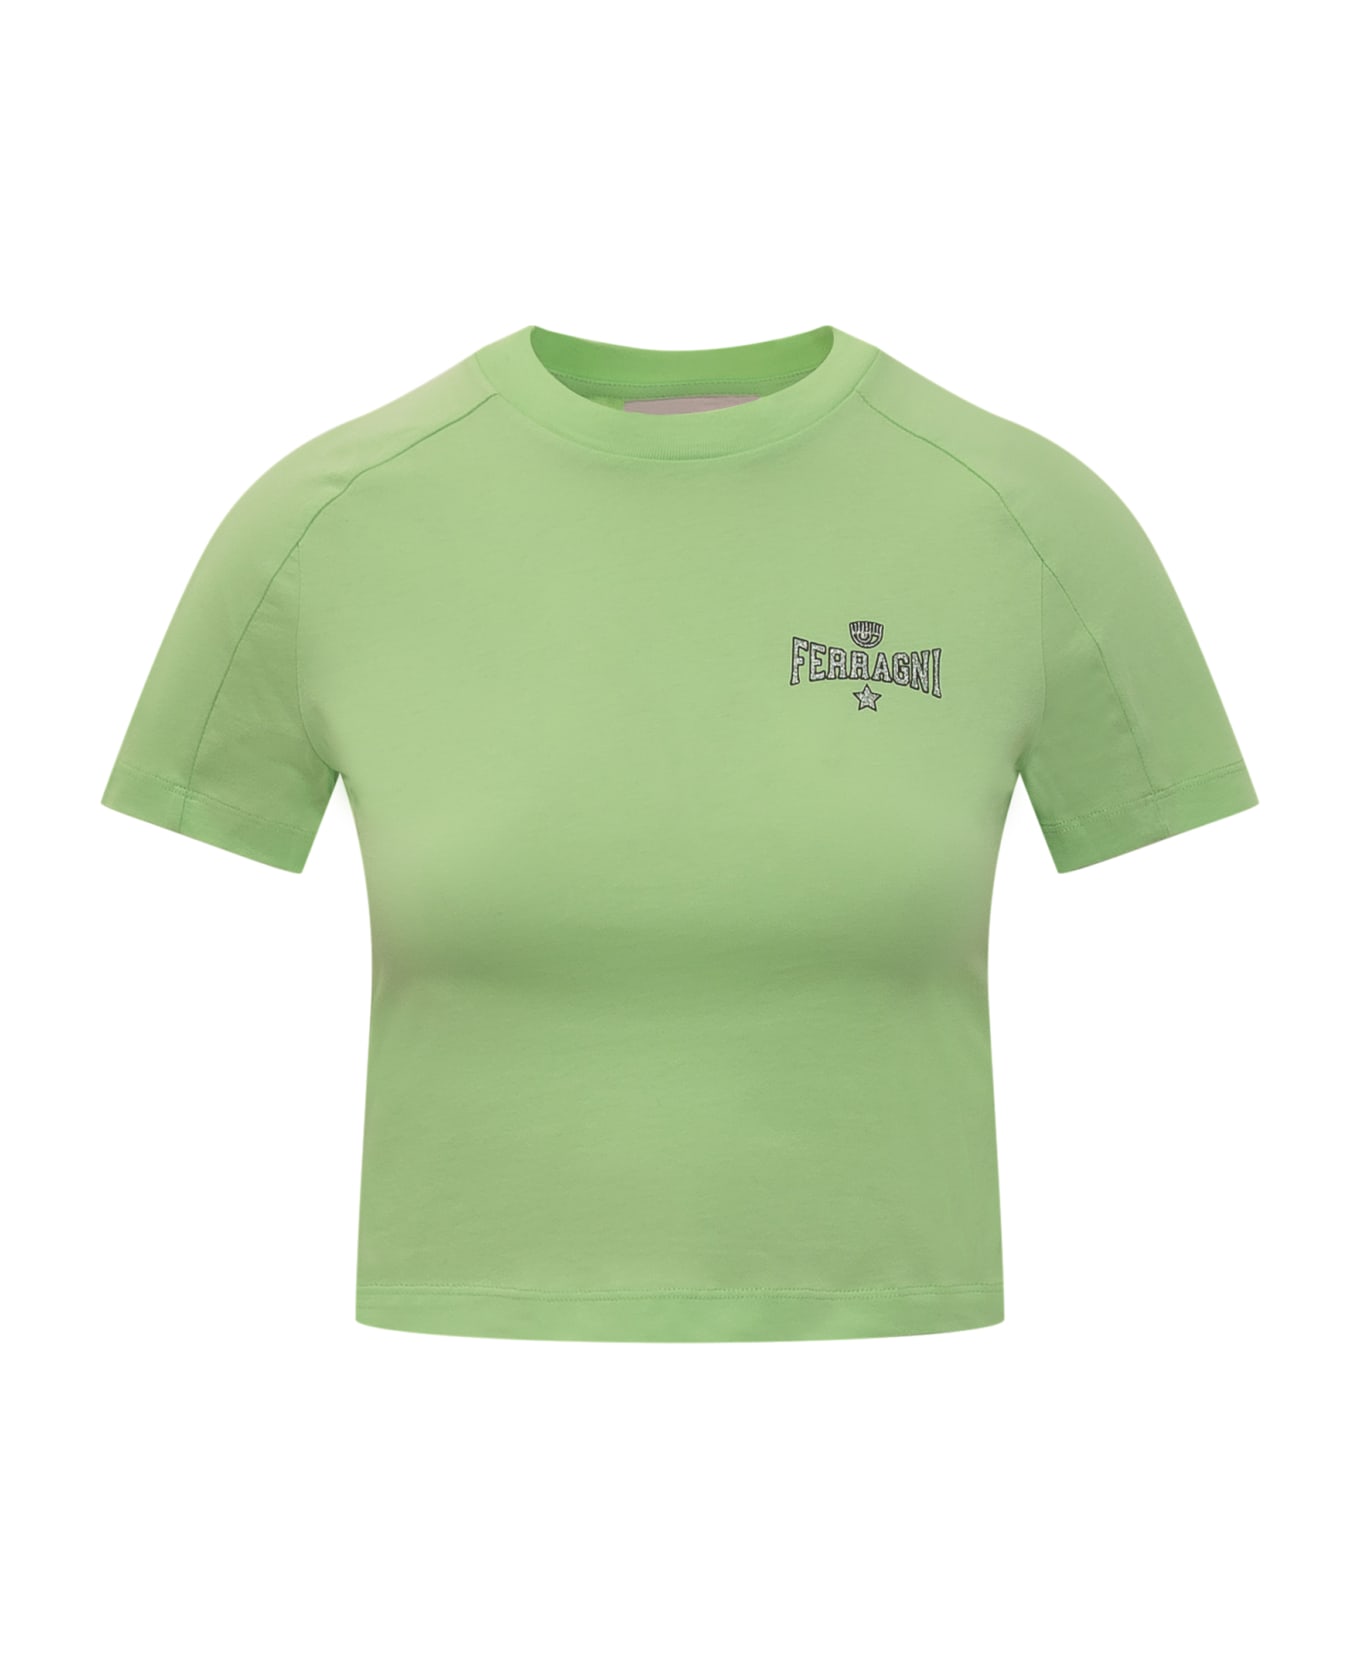 Chiara Ferragni Ferragni 602 T-shirt - Green Tシャツ